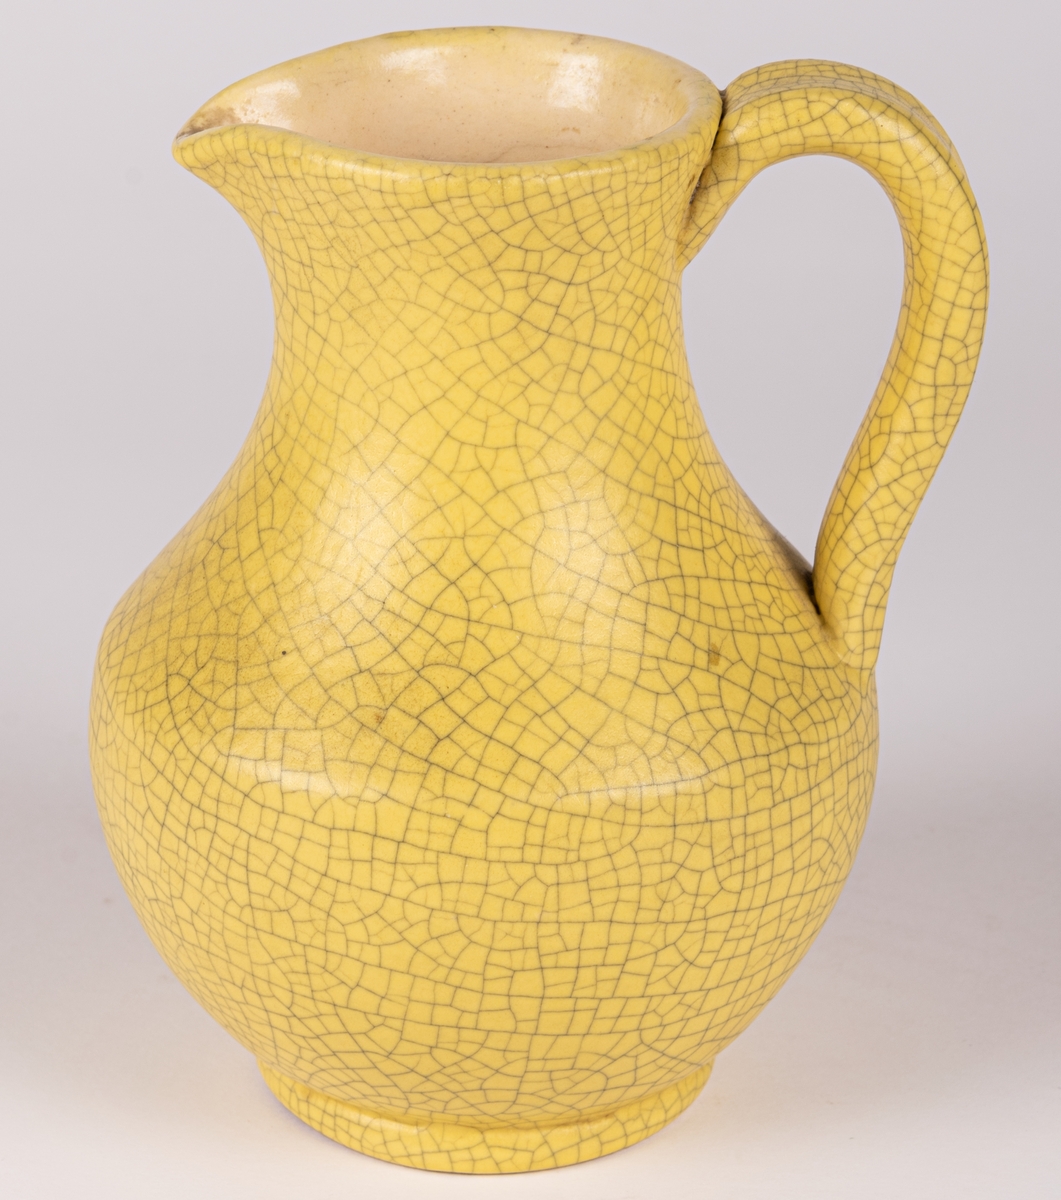 Liten gul kanna med hänkel, modell 3480, glasyr 1533 - klargul matt antik konstglasyr (krackelerad). Formgiven av konstnär Eva Jancke-Björk 1944 för Bo Fajans, Gävle.